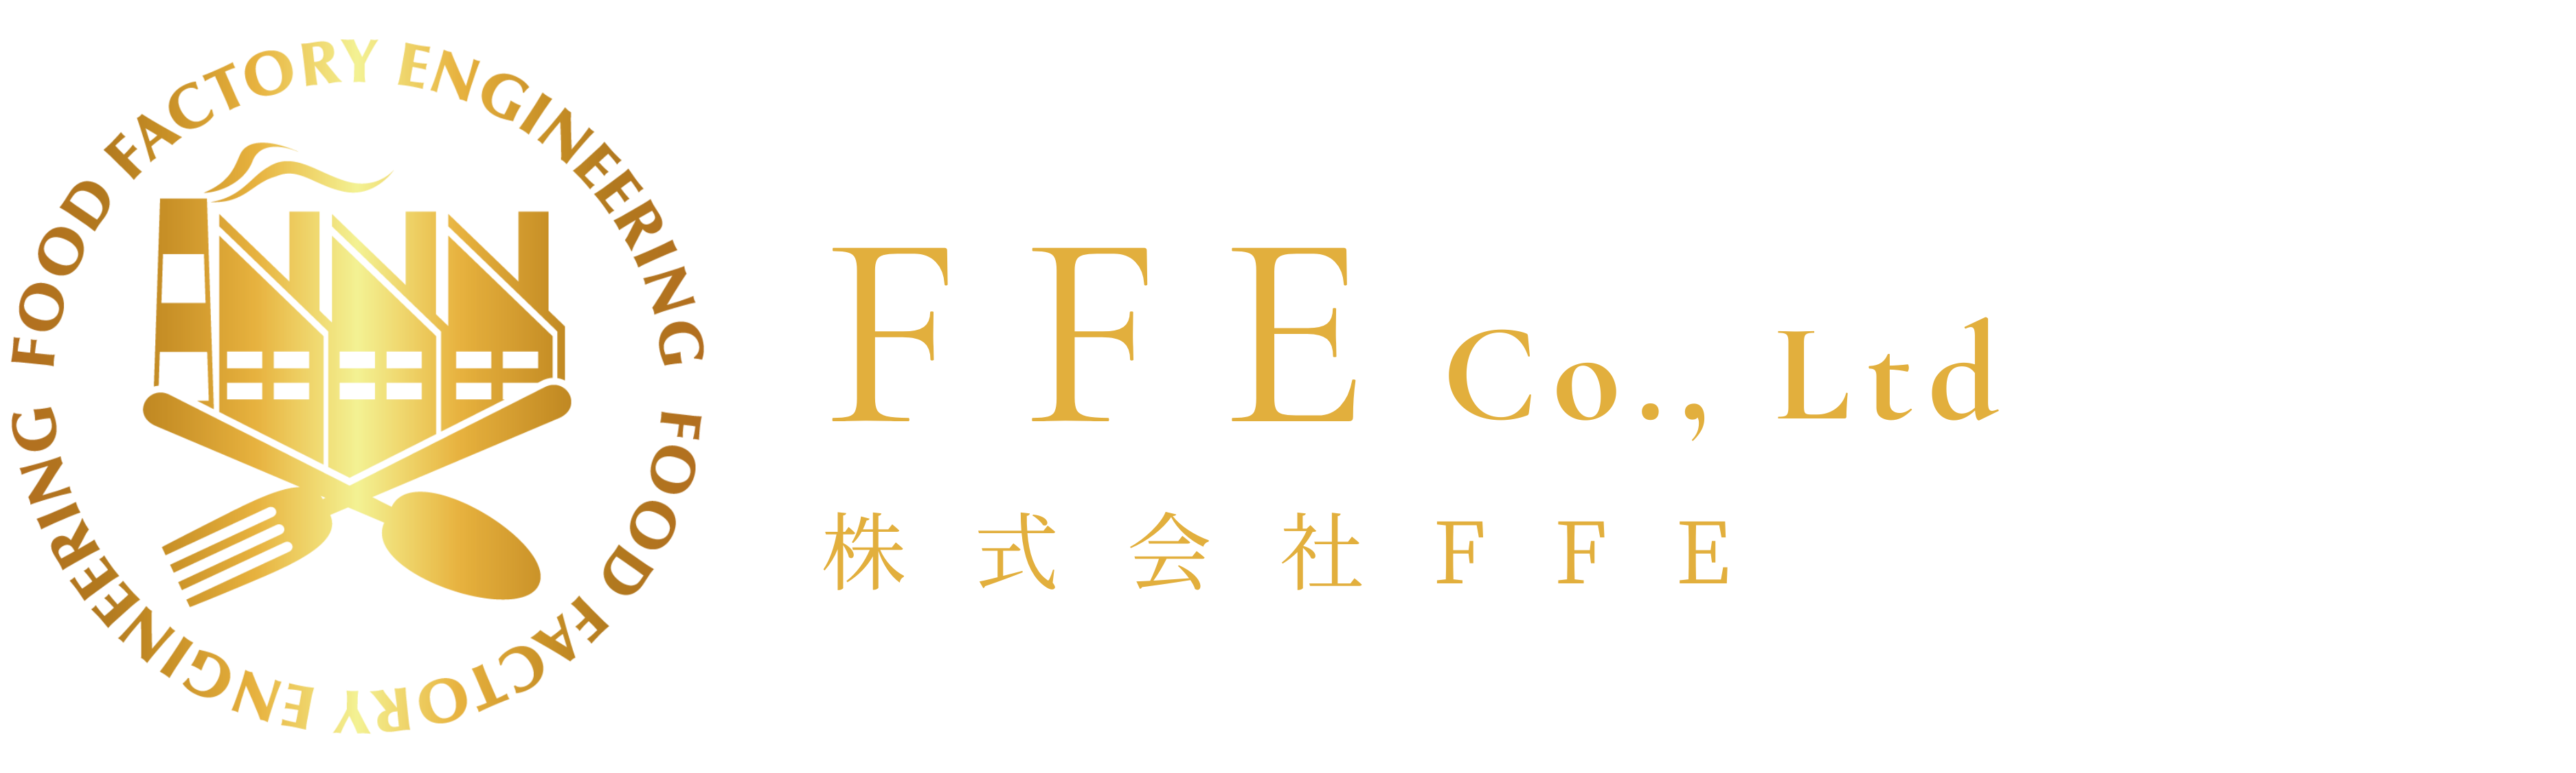 株式会社FFE